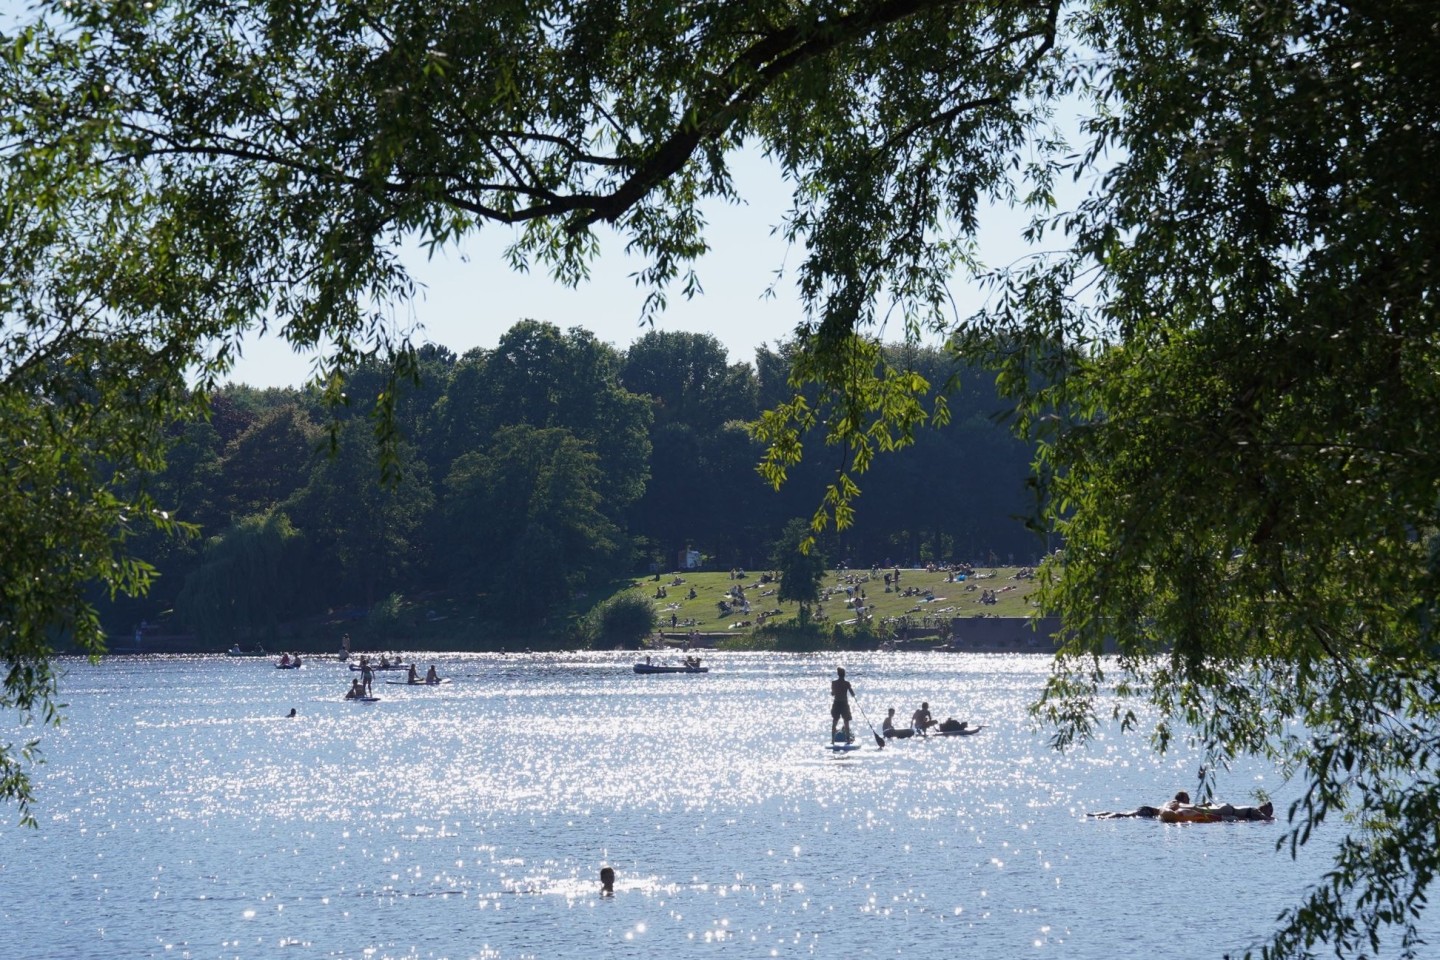 Menschen paddeln in der Sonne auf dem Hamburger Stadtparksee.